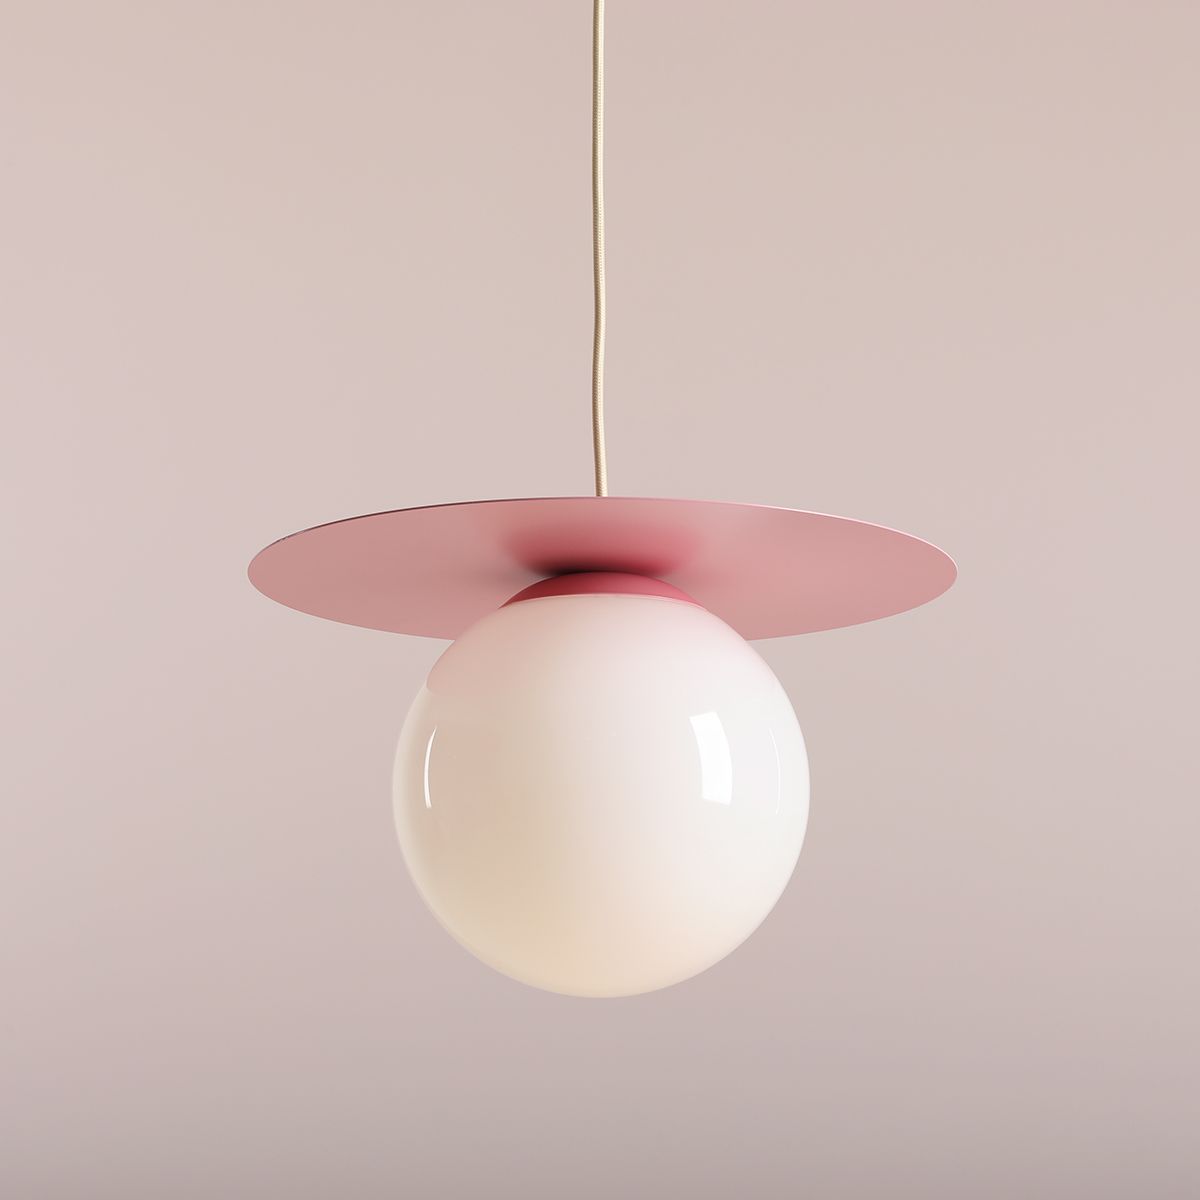 Lampa wisząca Loop Baby Pink - M, różowy dysk z kulą